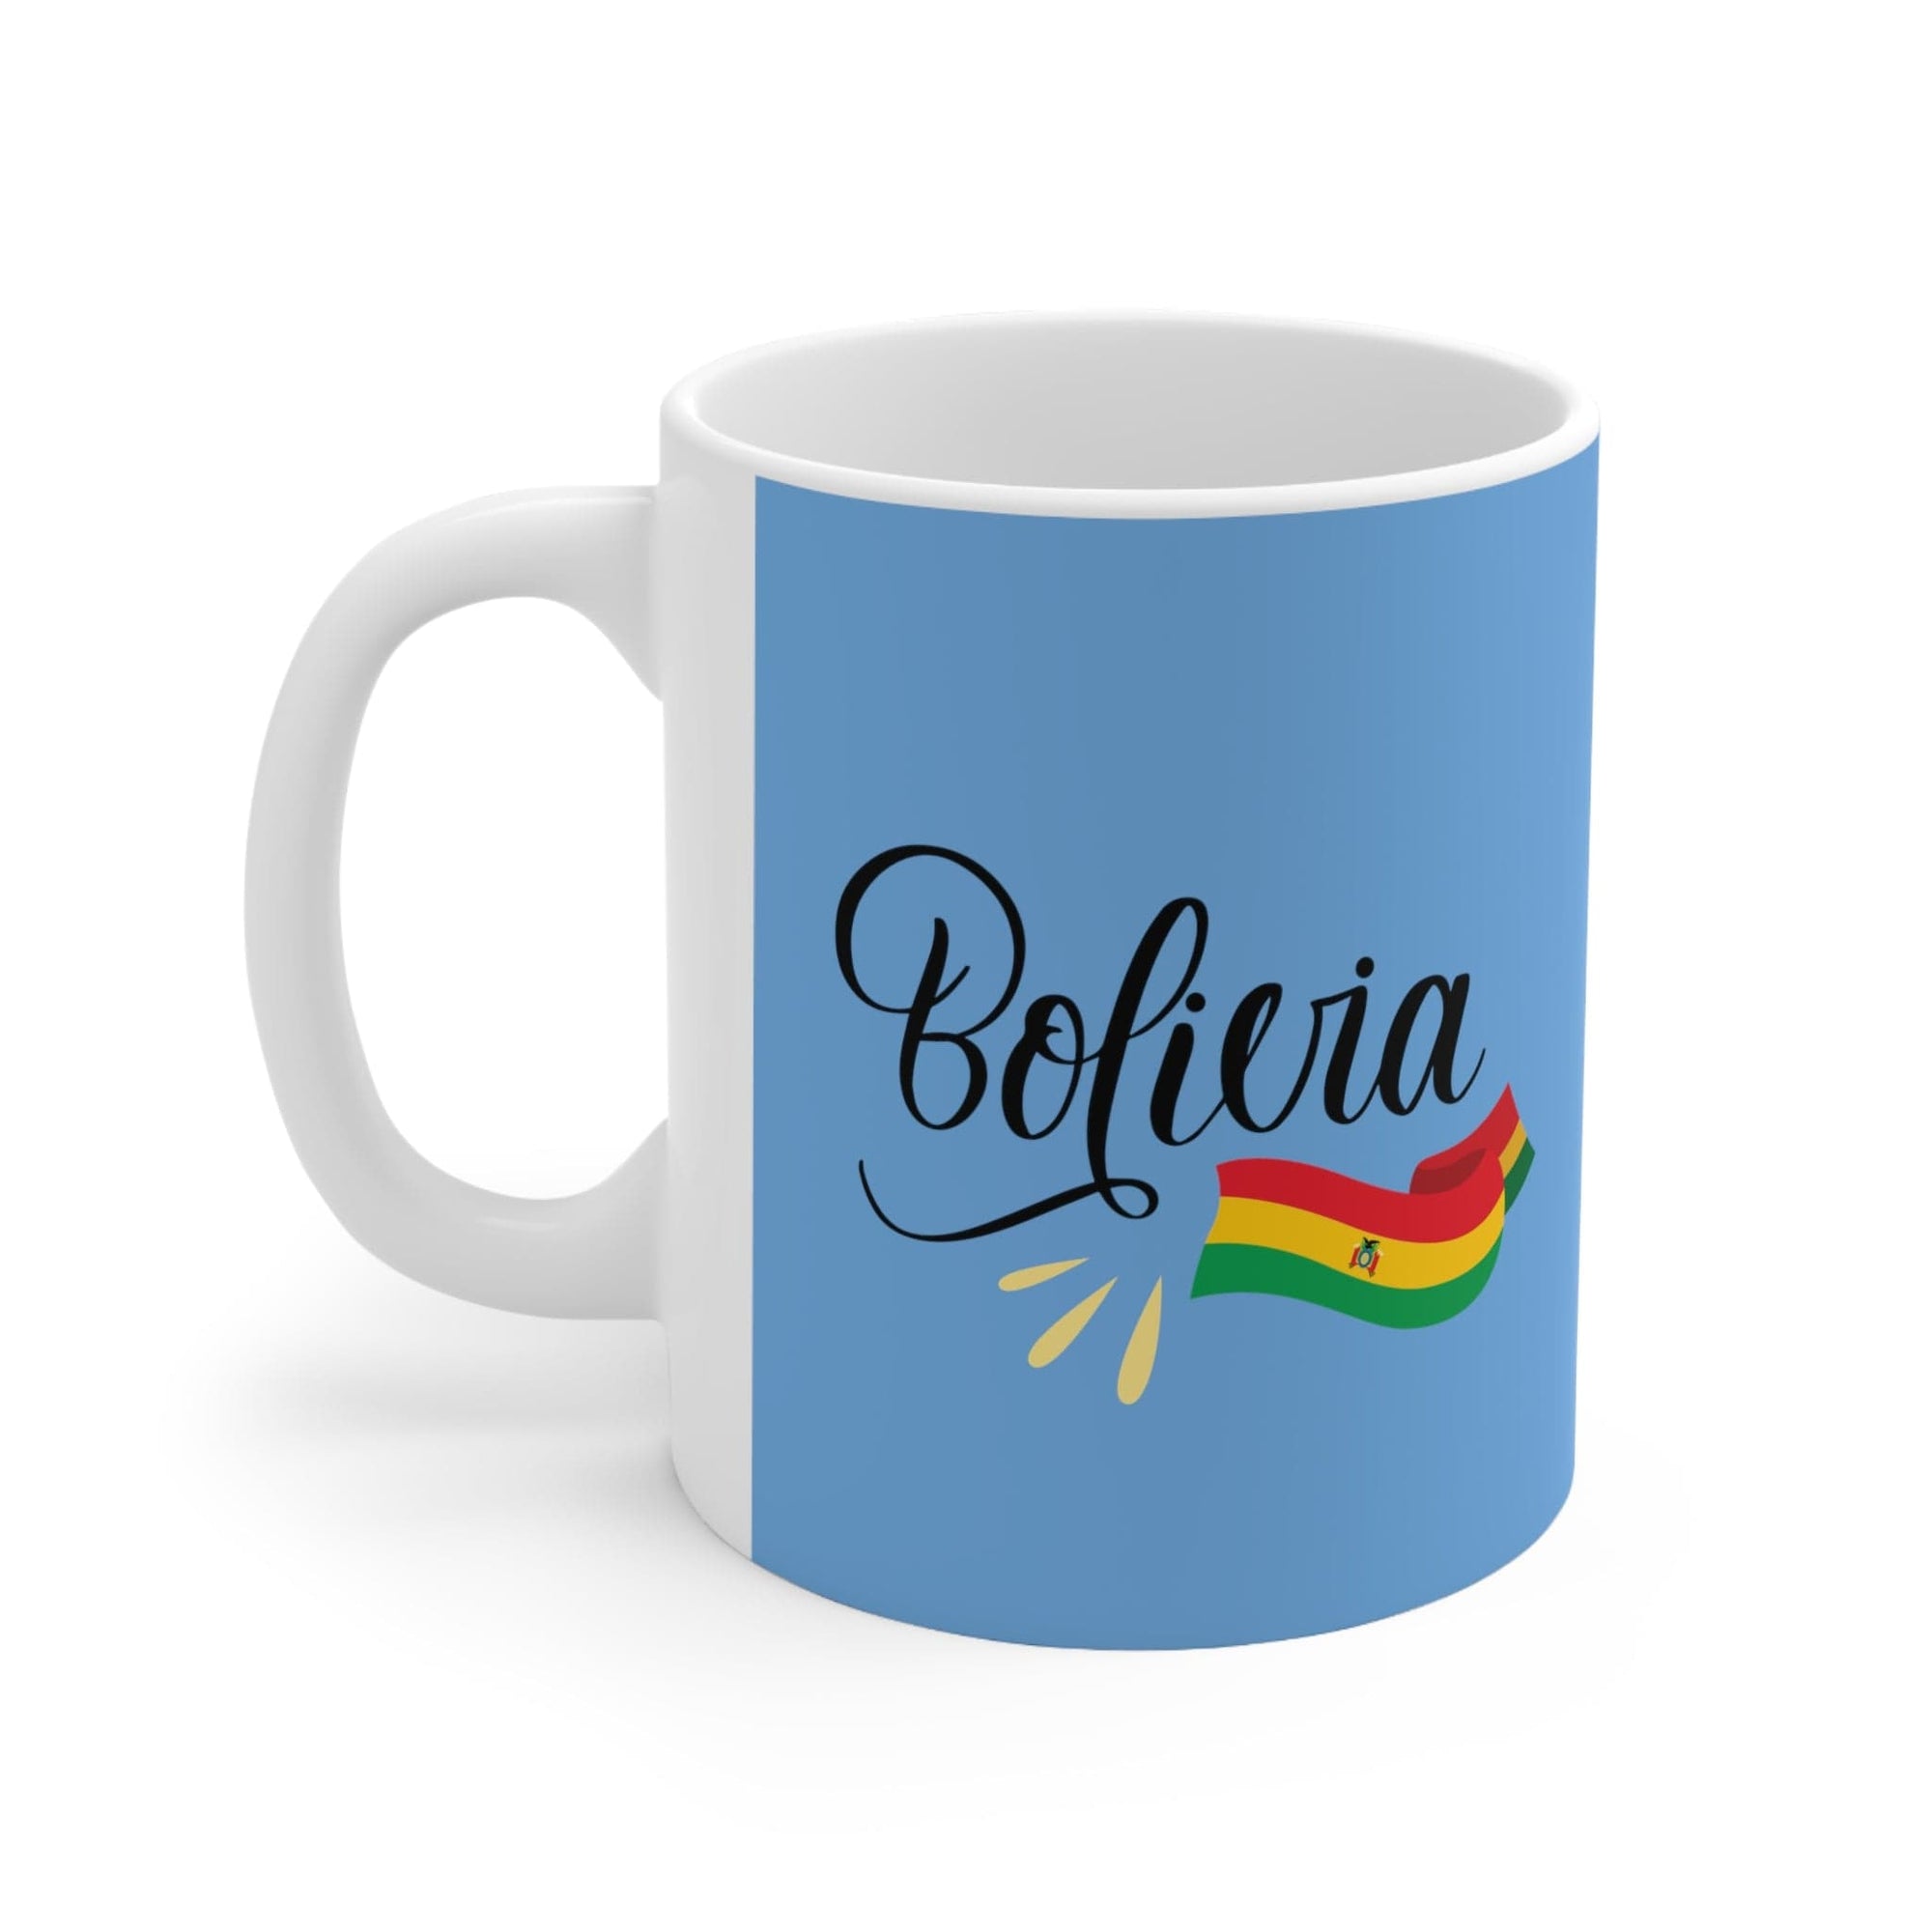 BOLIVIA - Awesome Ceramic Mug, Exclusive Design